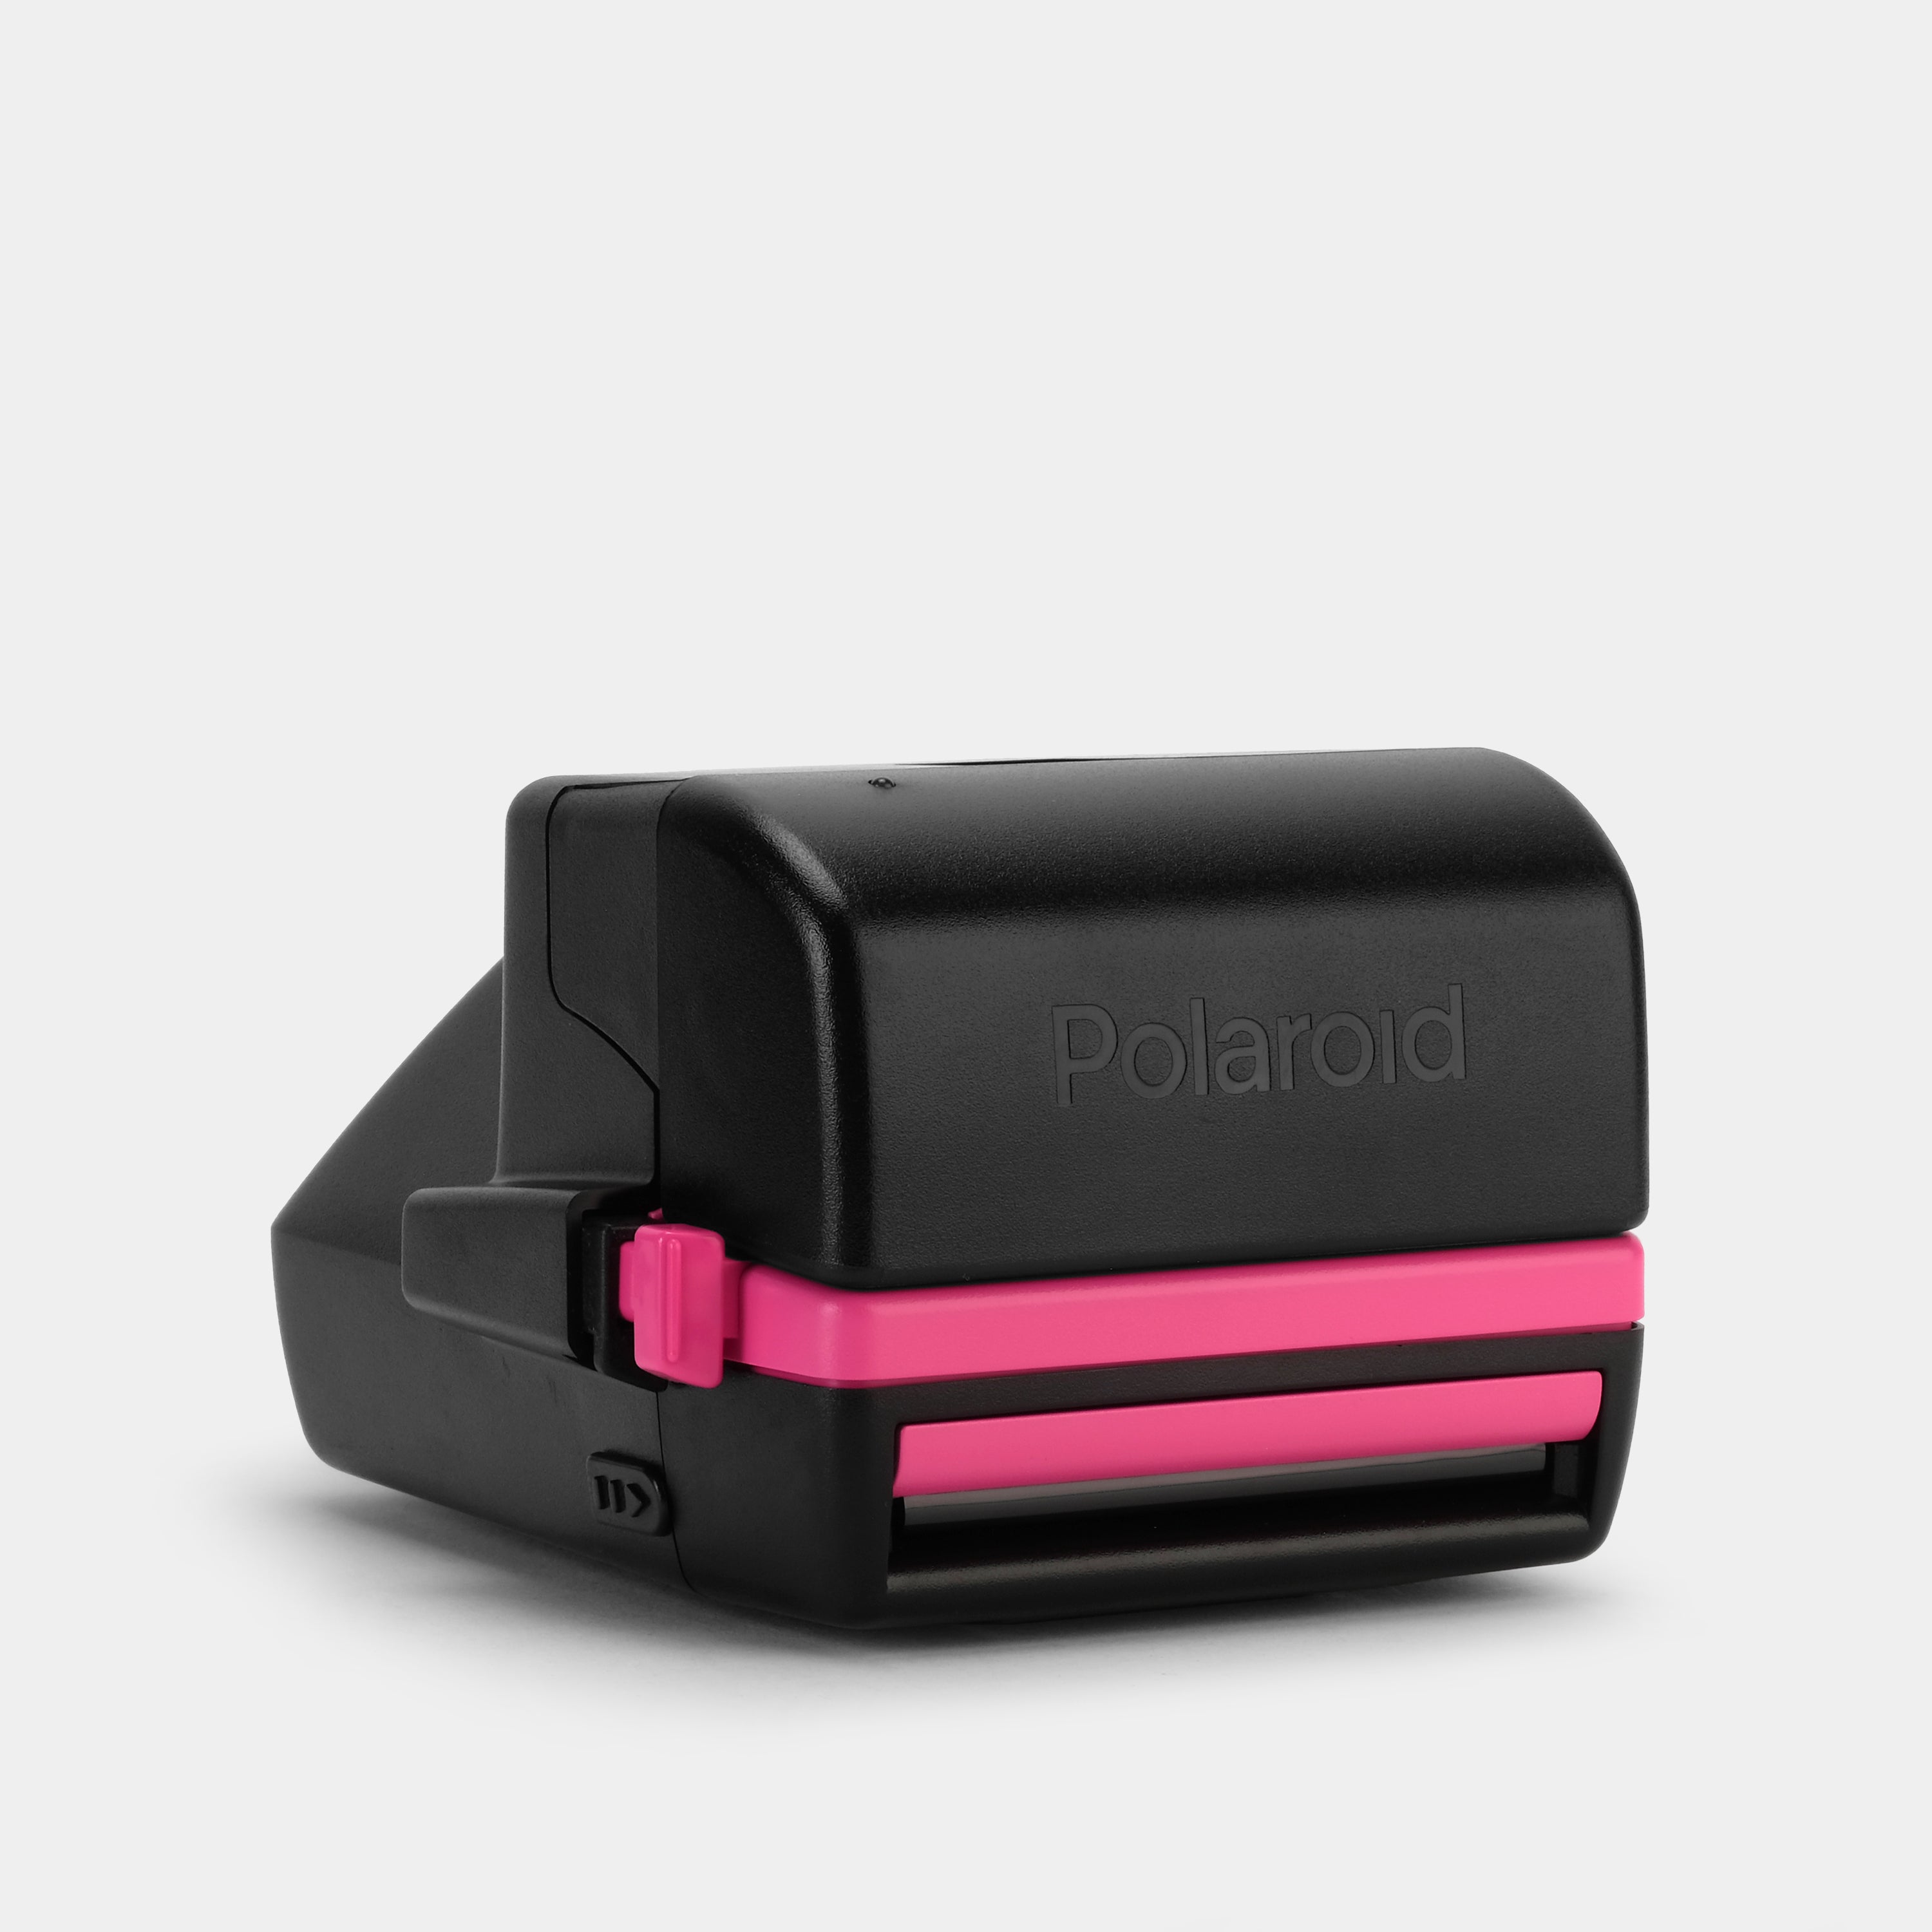 Polaroid 600 Cool Cam 90s Pink Instant Film Camera